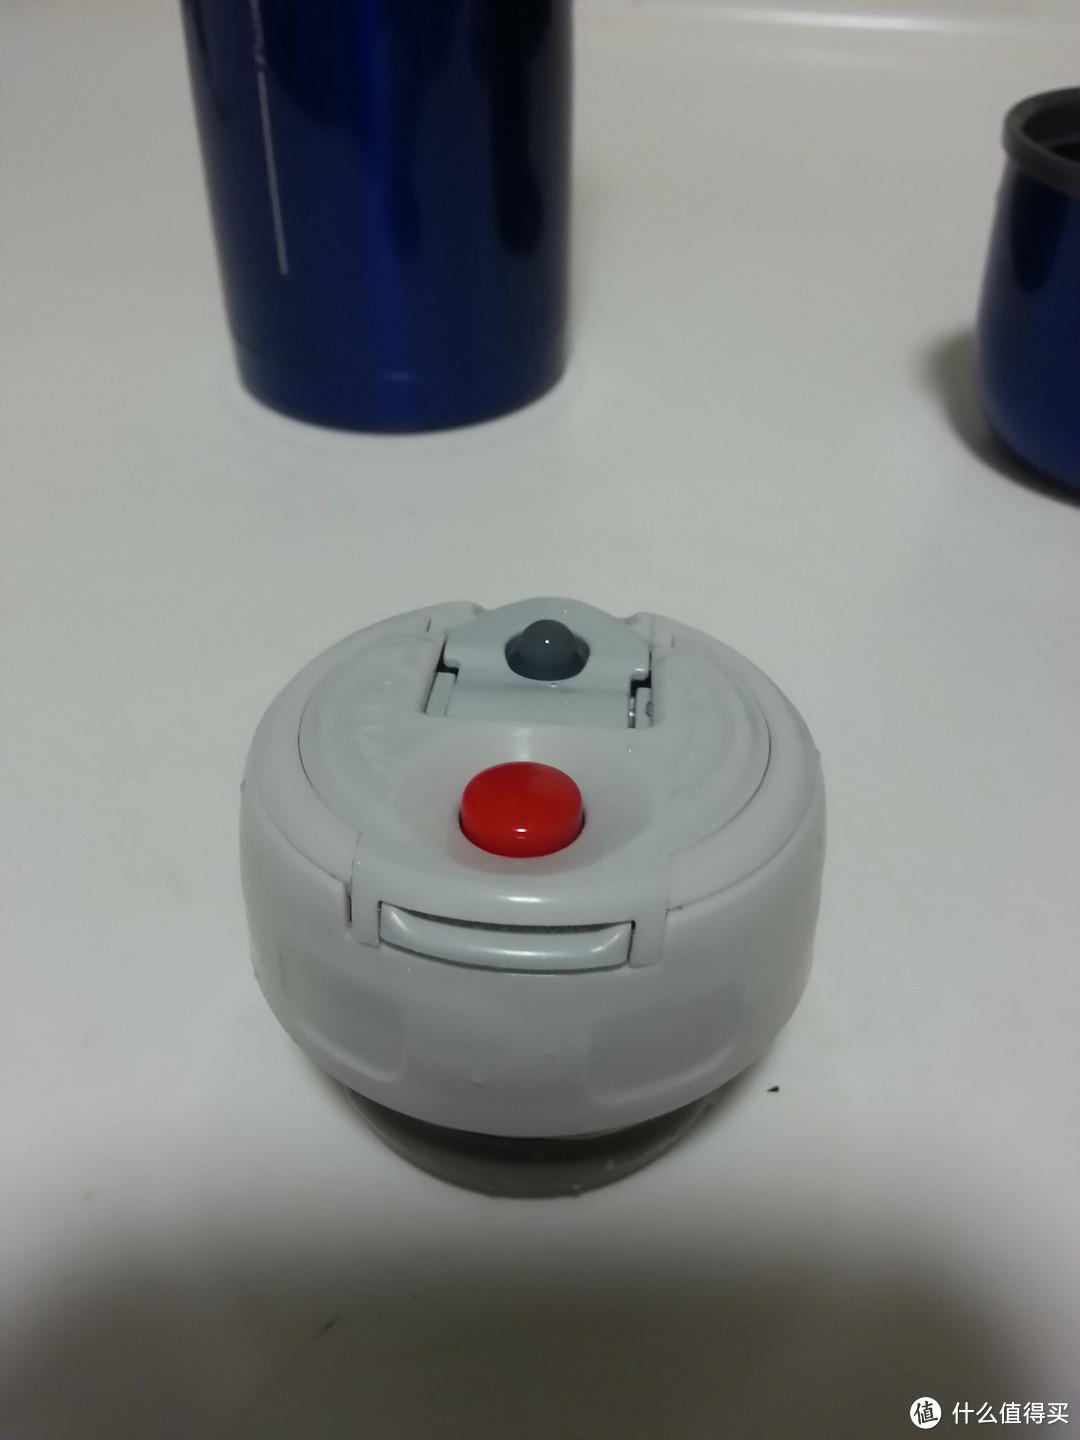 红色按钮按下后出水口弹出